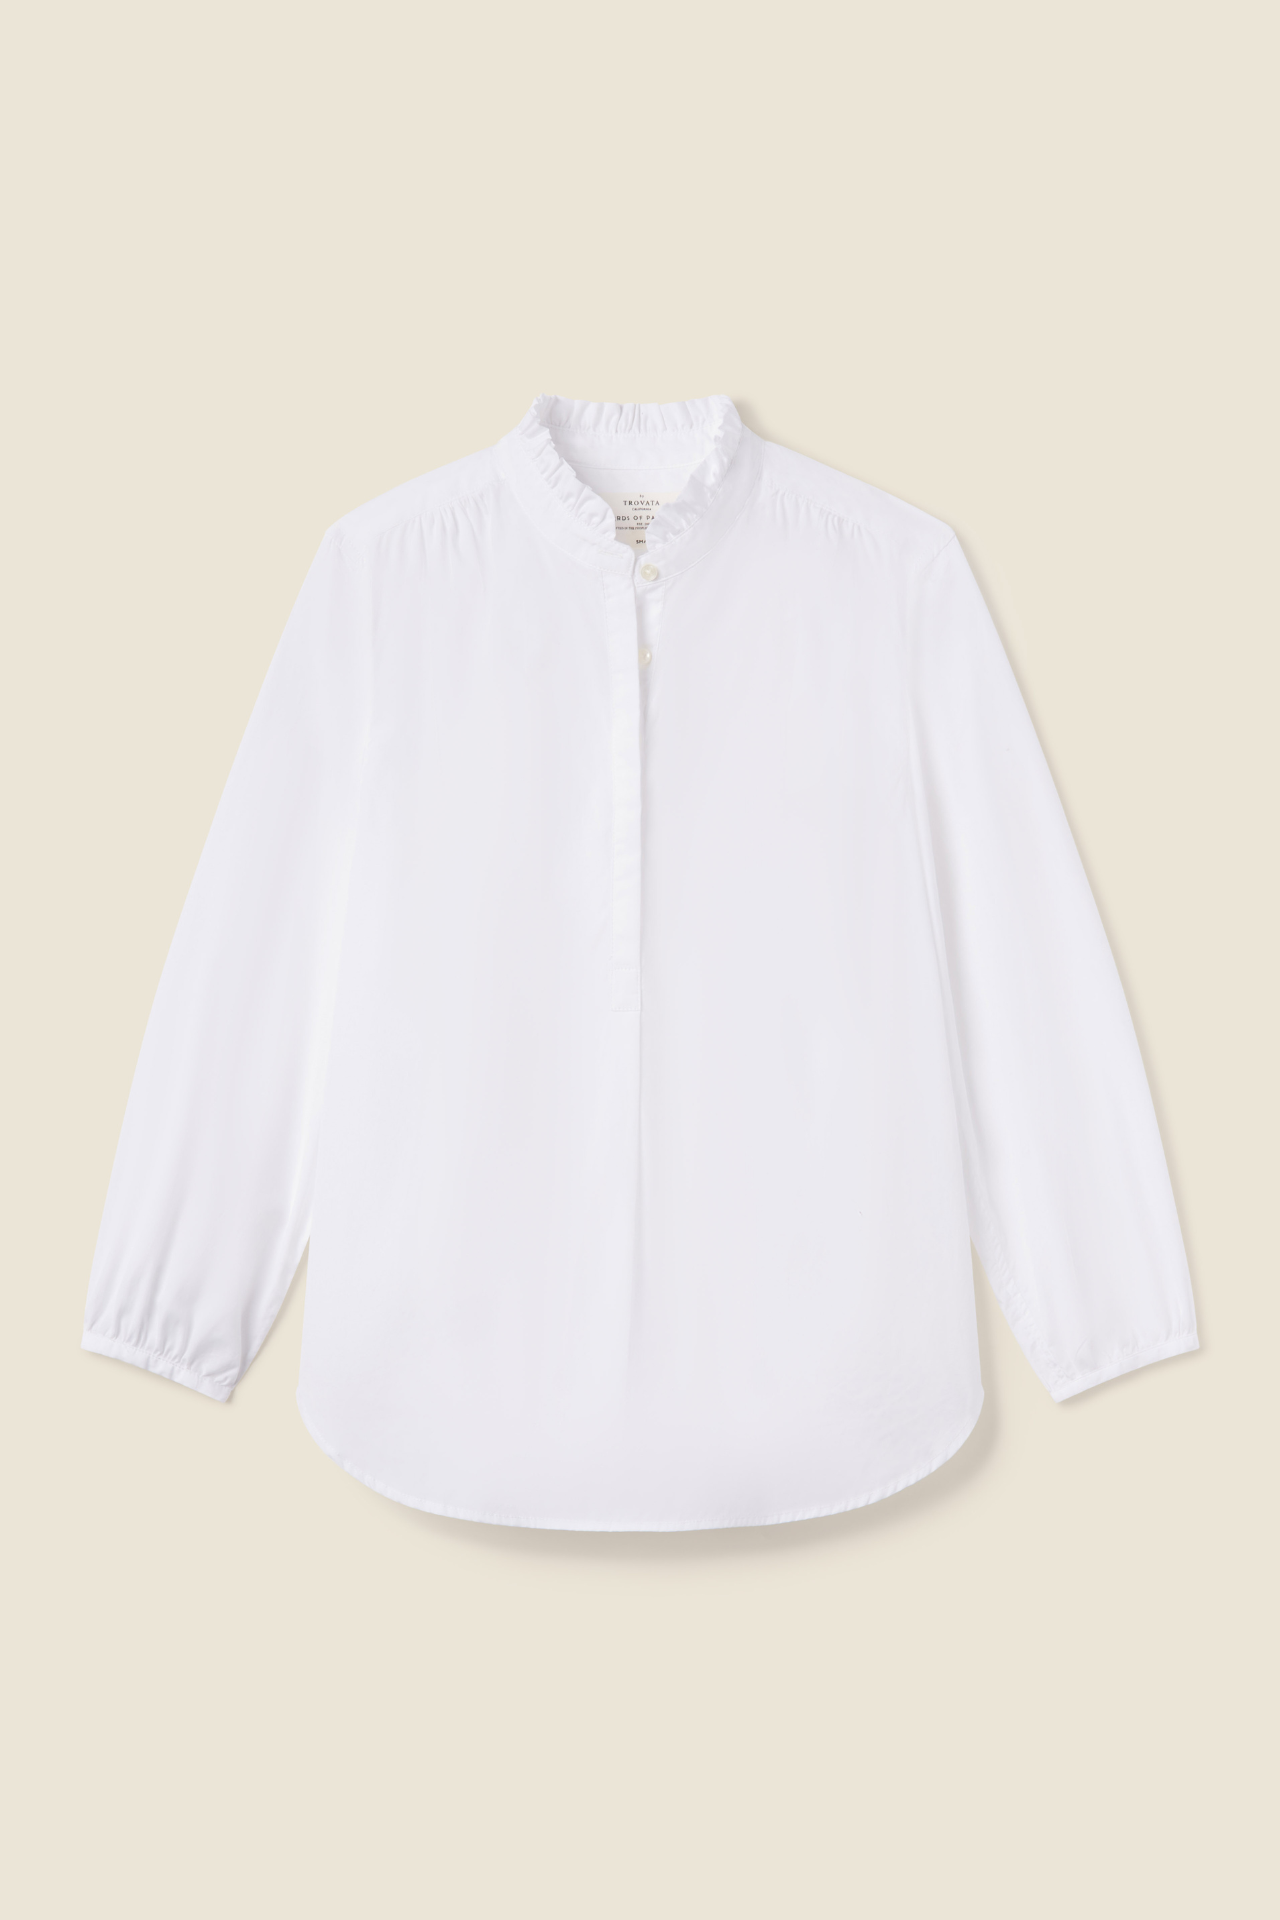 Sara B Henley Shirt White Poplin